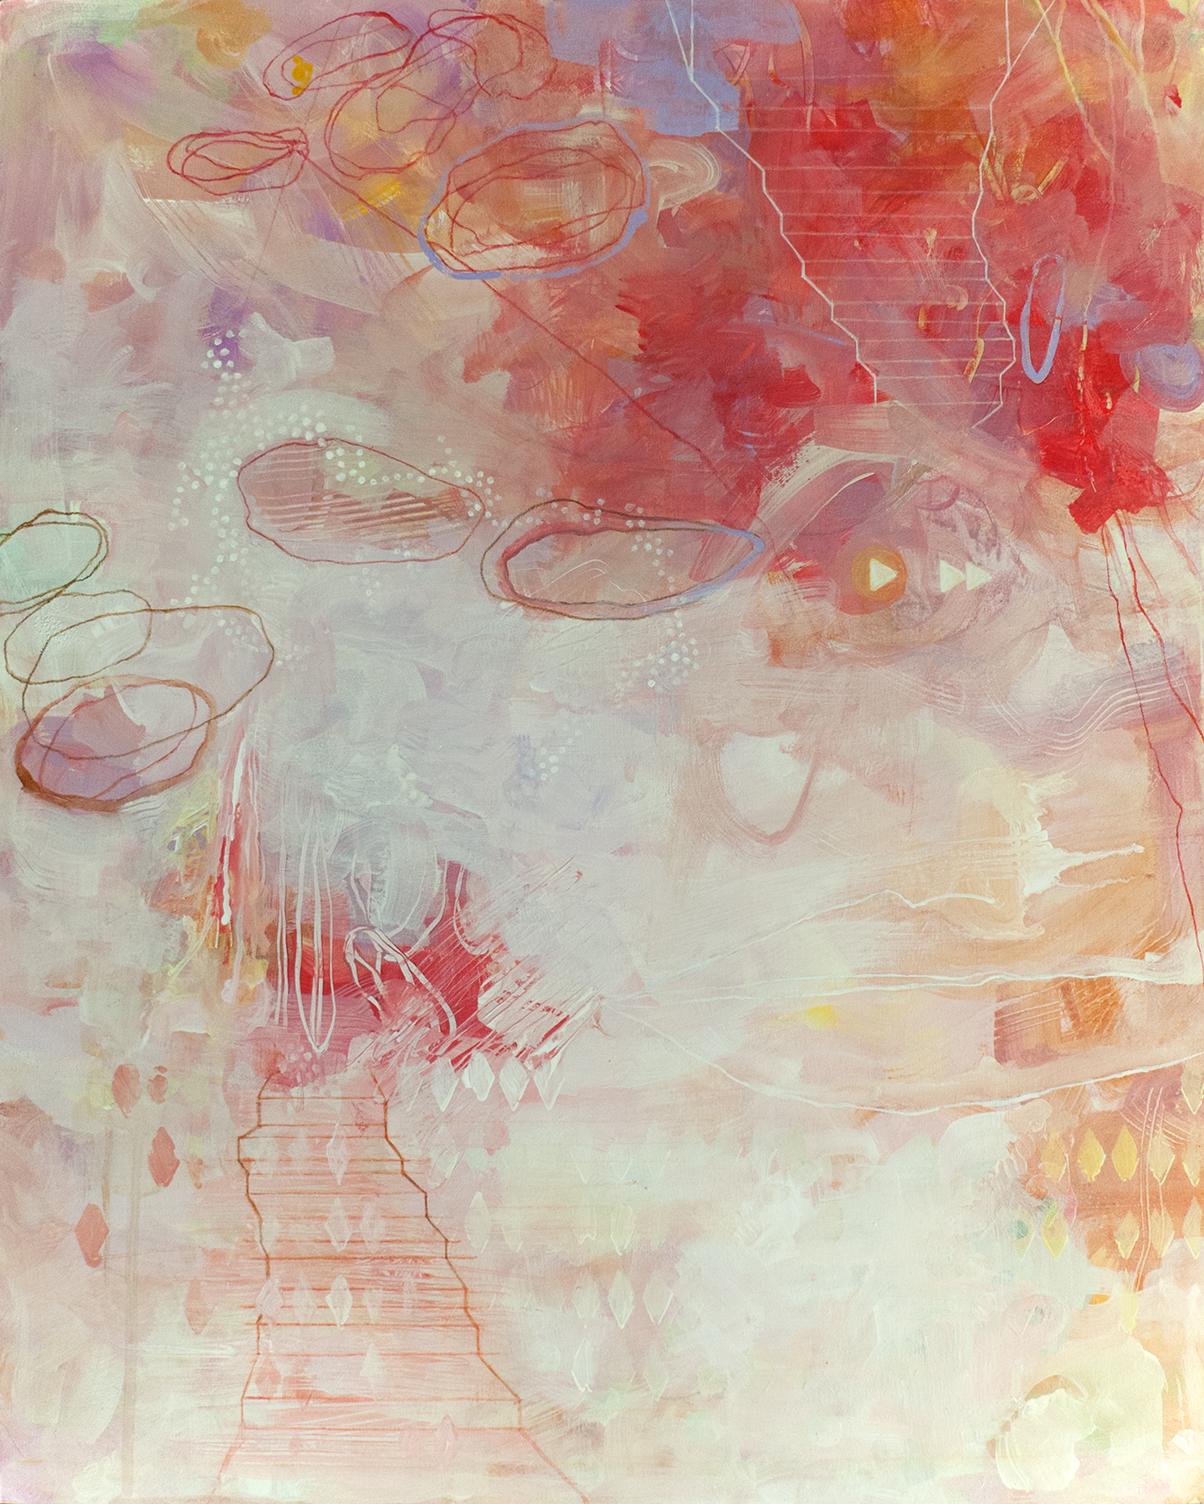 Abstract Painting Sandra Cohen - « The Landing », peinture acrylique rouge, orange, jaune, rose, violet,